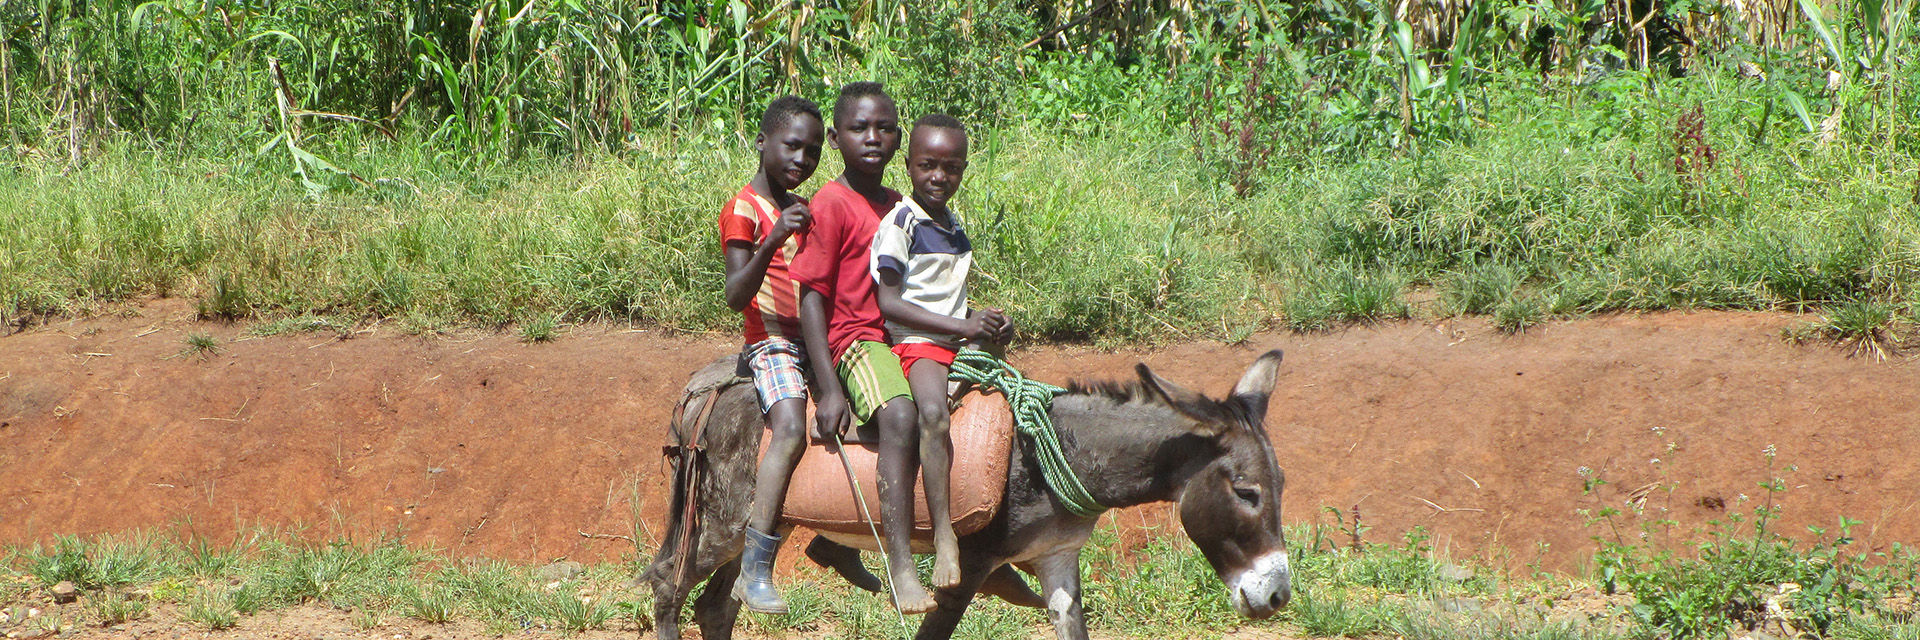 Drei äthiopische Kinder auf einem Esel